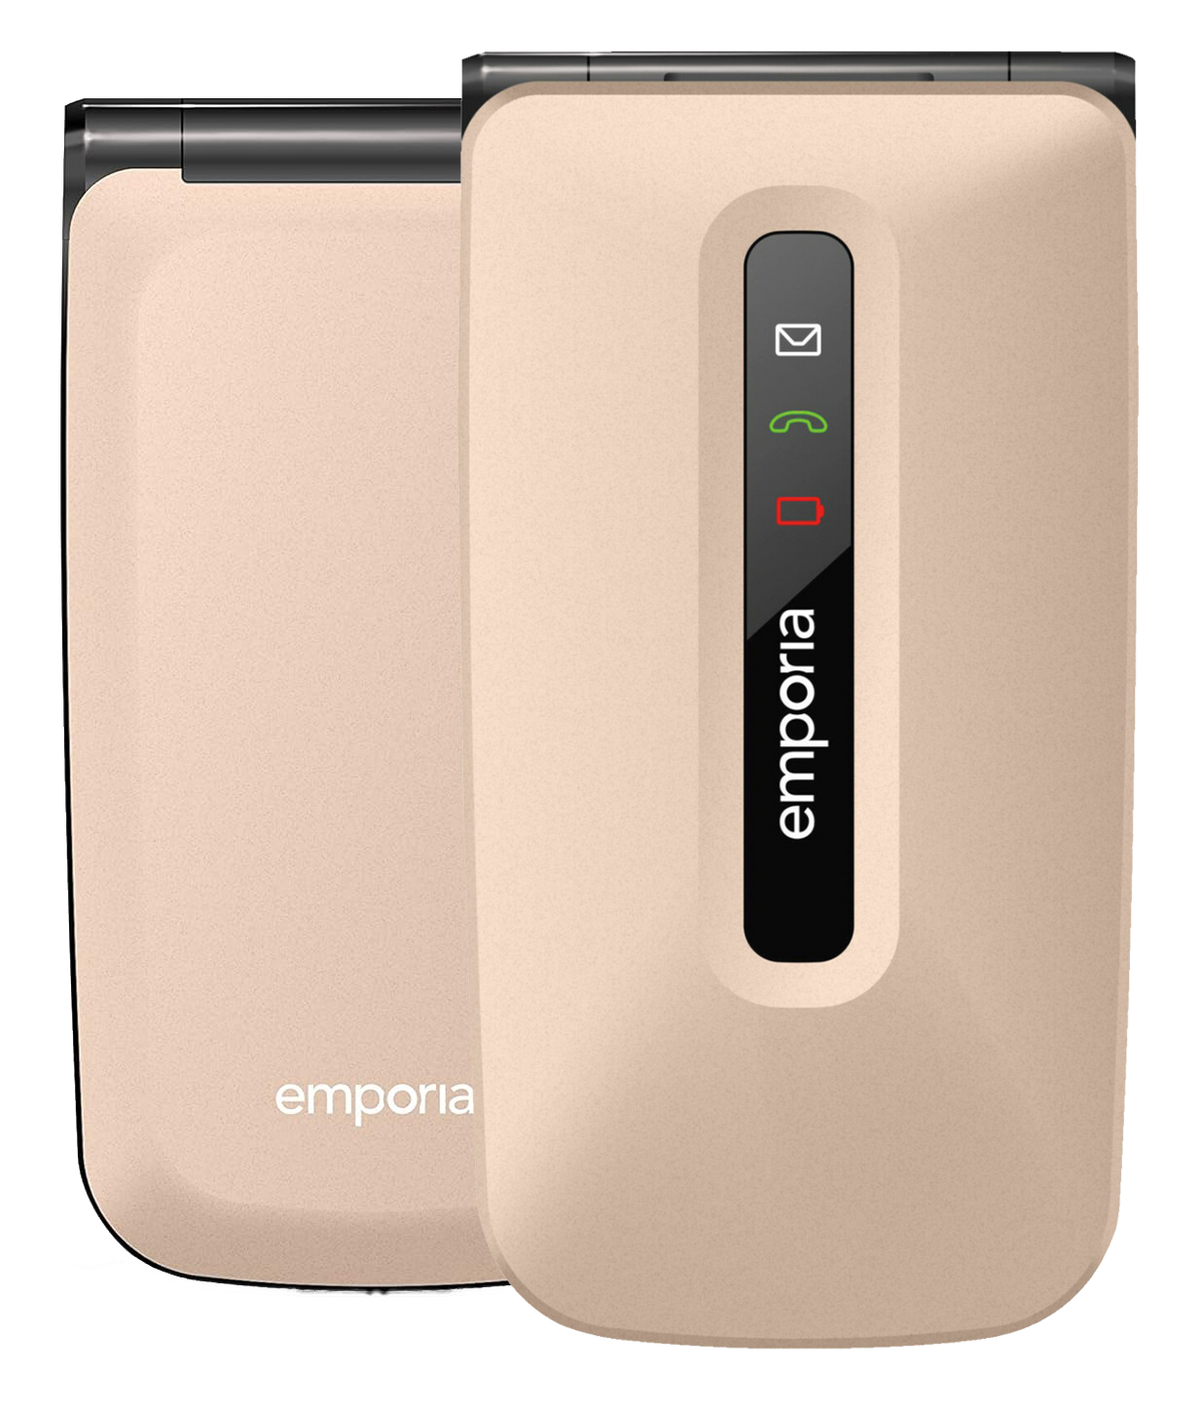 Emporia FLIP Dual-SIM gold - Ohne Vertrag